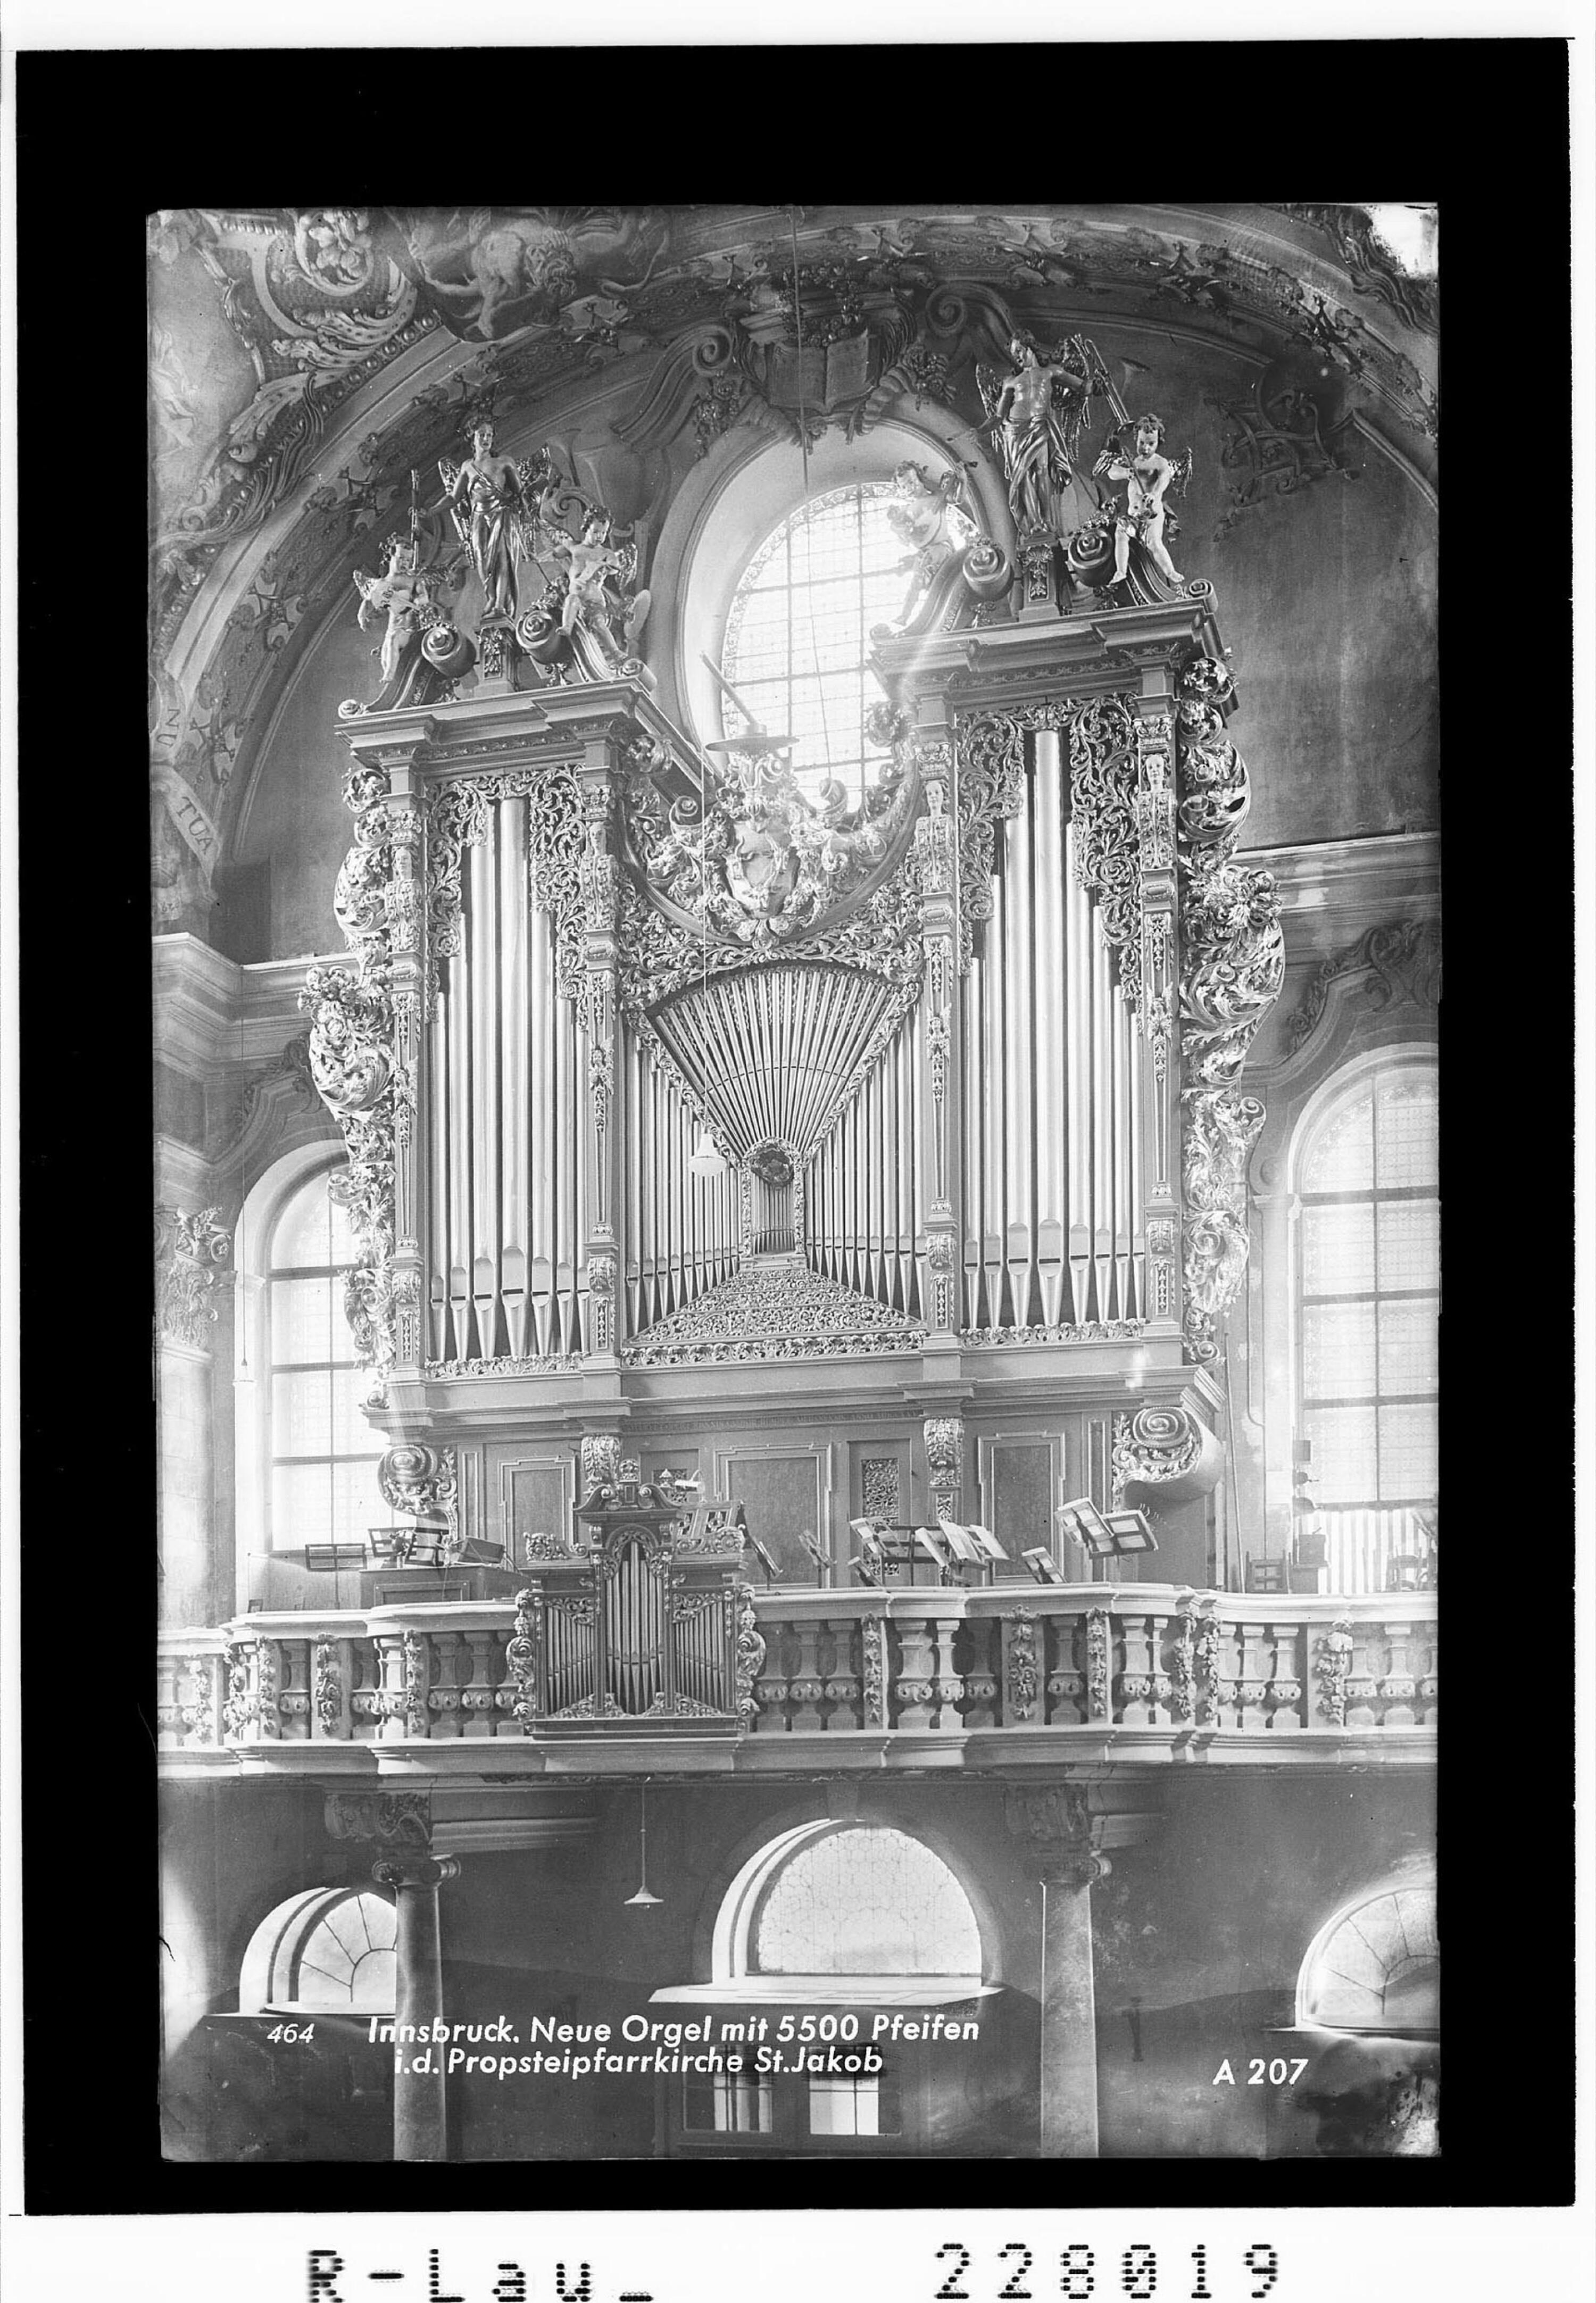 Innsbruck / Neue Orgel mit 5500 Pfeifen in der Propsteipfarrkirche St. Jakob></div>


    <hr>
    <div class=